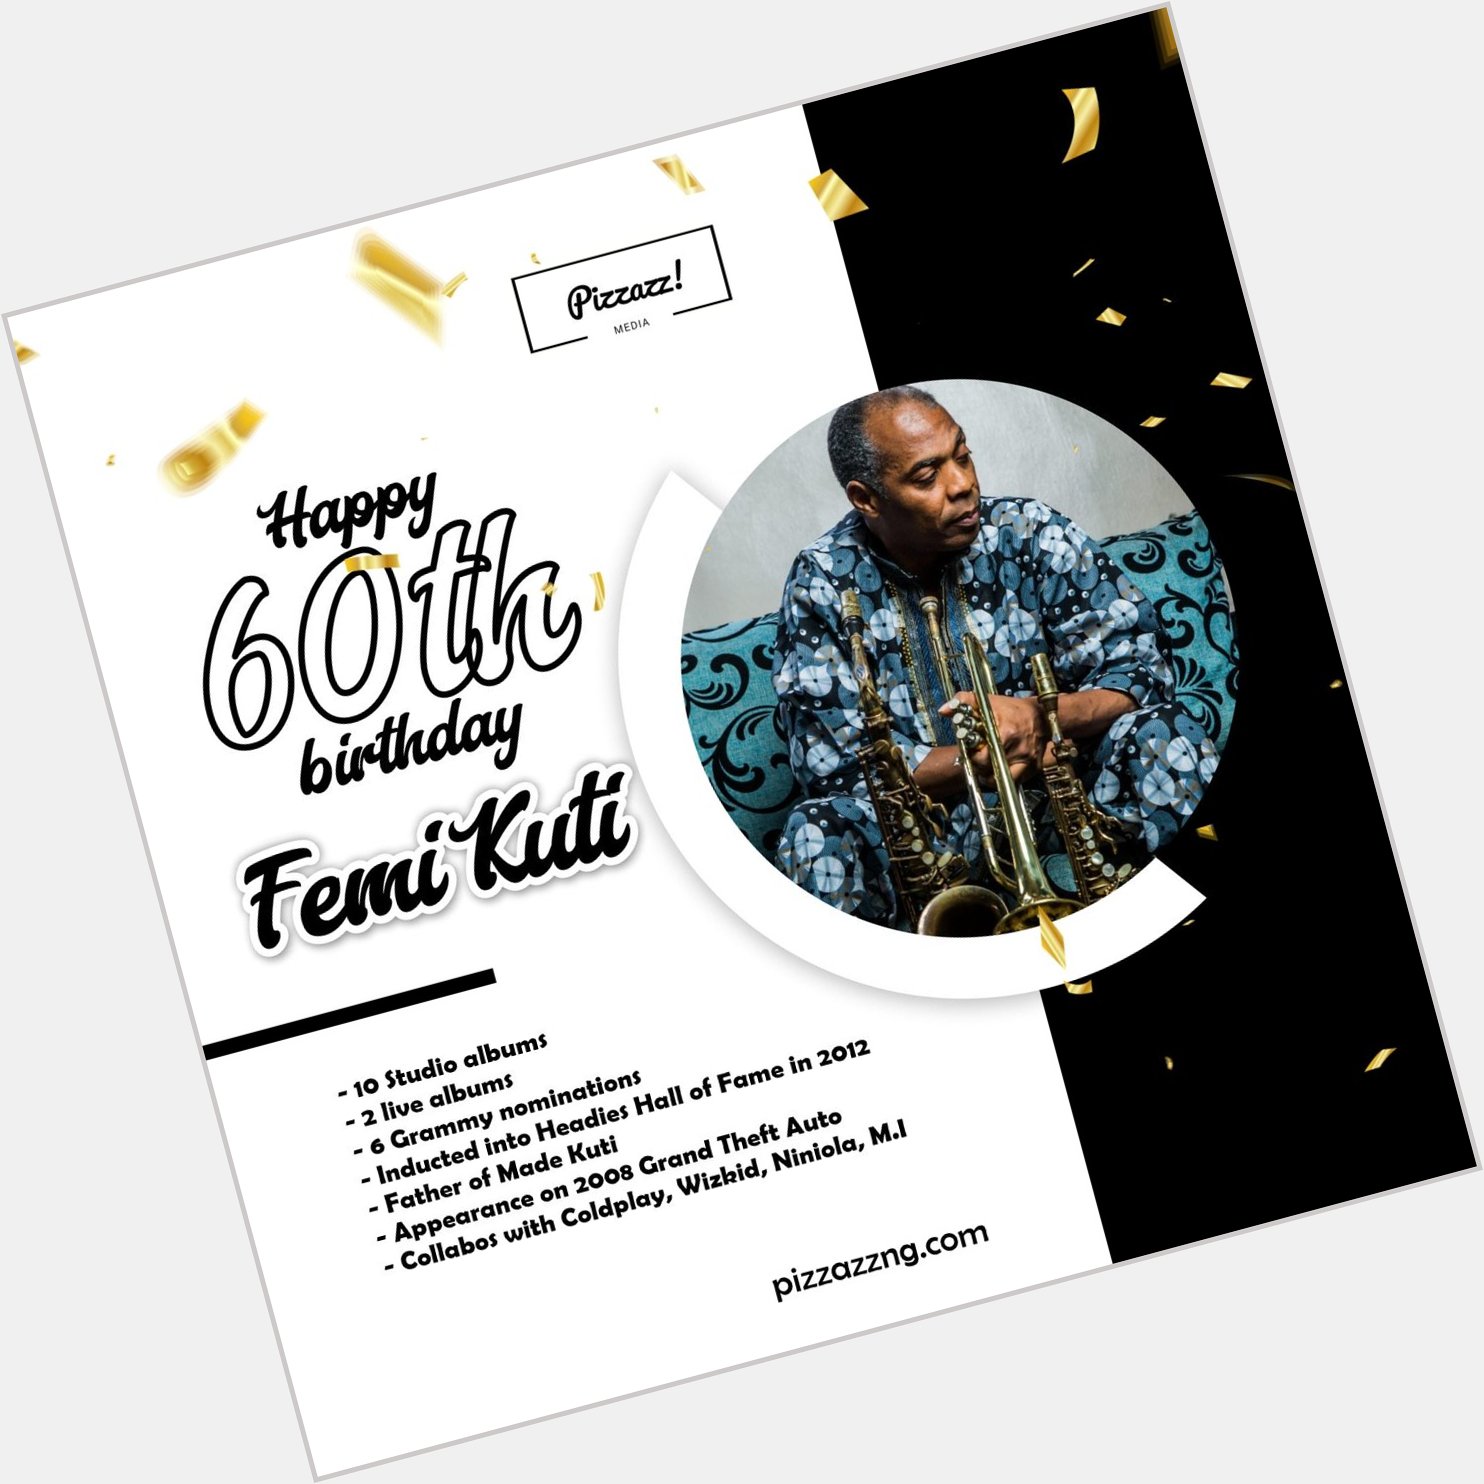 Happy 60th birthday to the legendary Femi Kuti Music royalty to the bone  